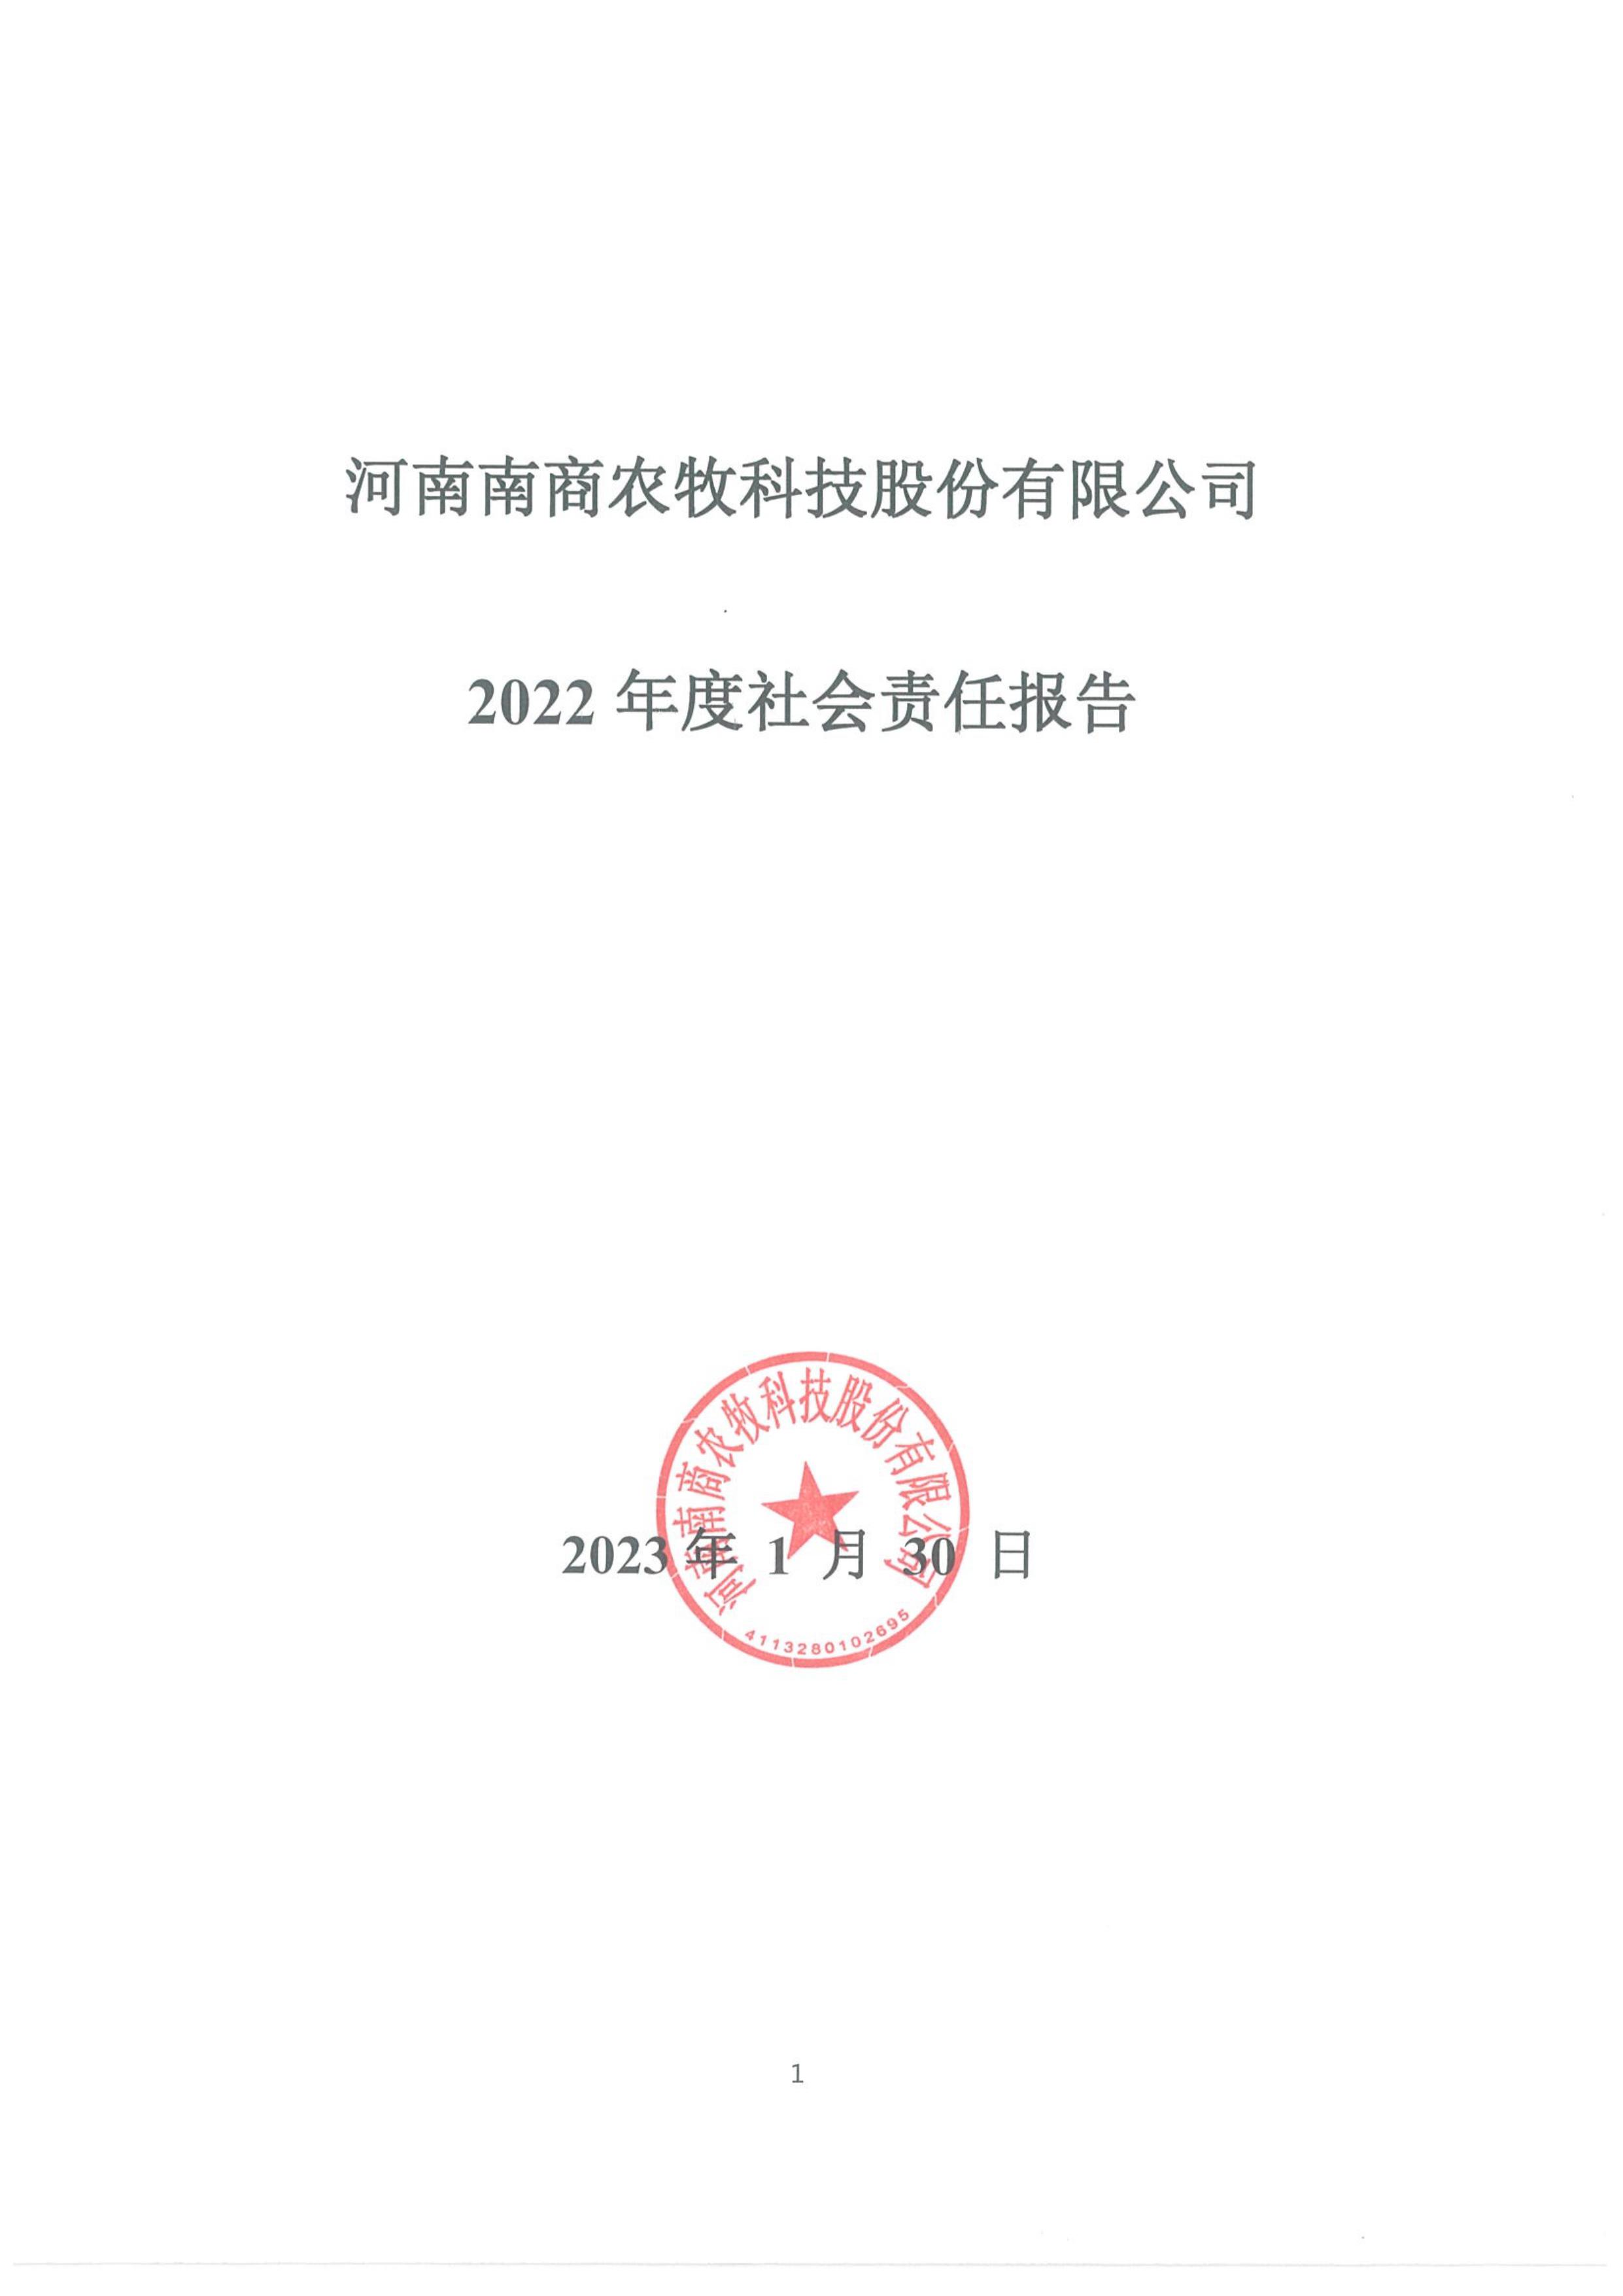 2022年度社会责任报告-1